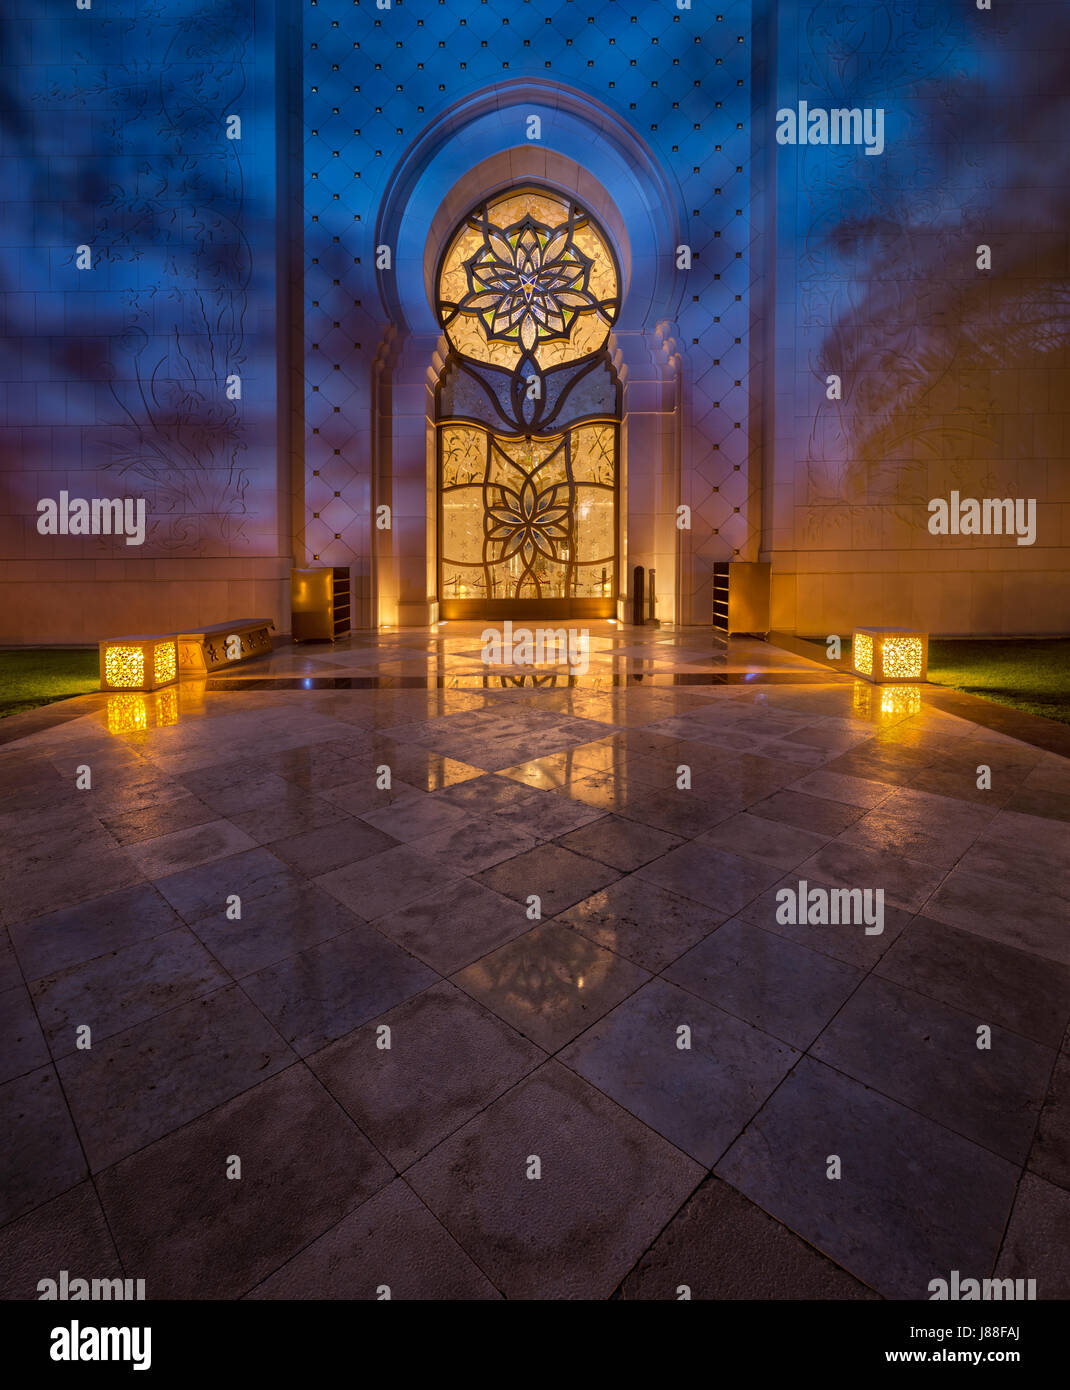 La mosquée Sheikh Zayed à Abu Dhabi islamique de luxe porte avec la réflexion sur marbles Banque D'Images